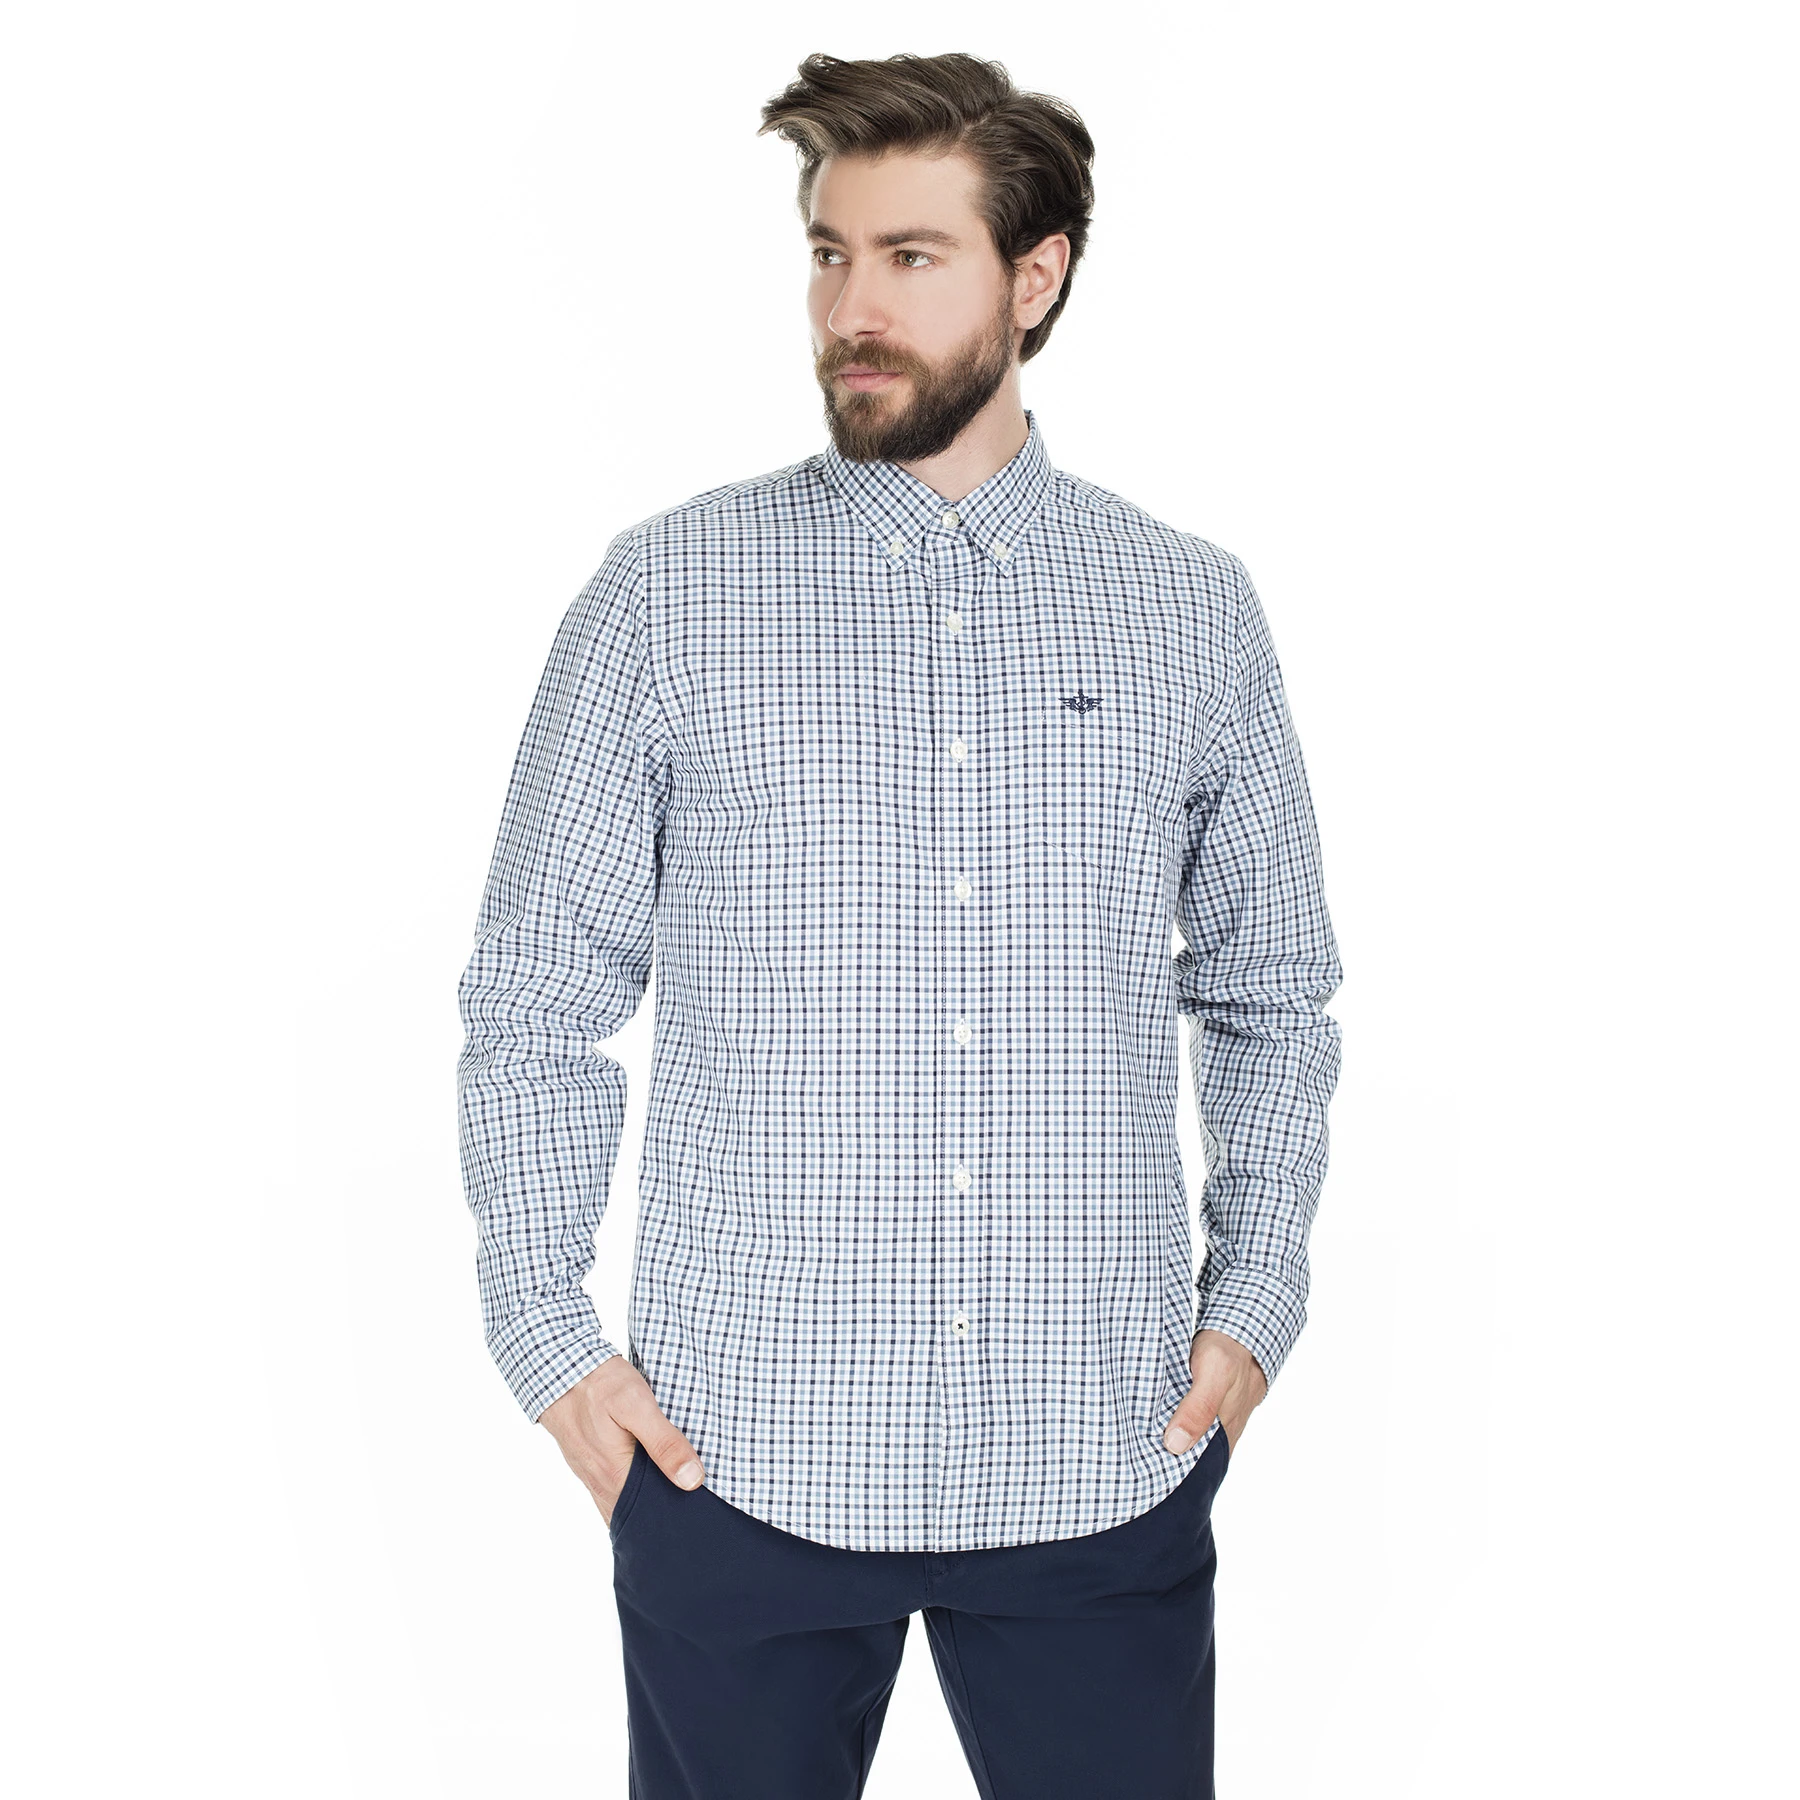 suficiente Trascendencia fluido Camisa a cuadros masculina con cuello de botón Dockers 52661|Camisas  informales| - AliExpress